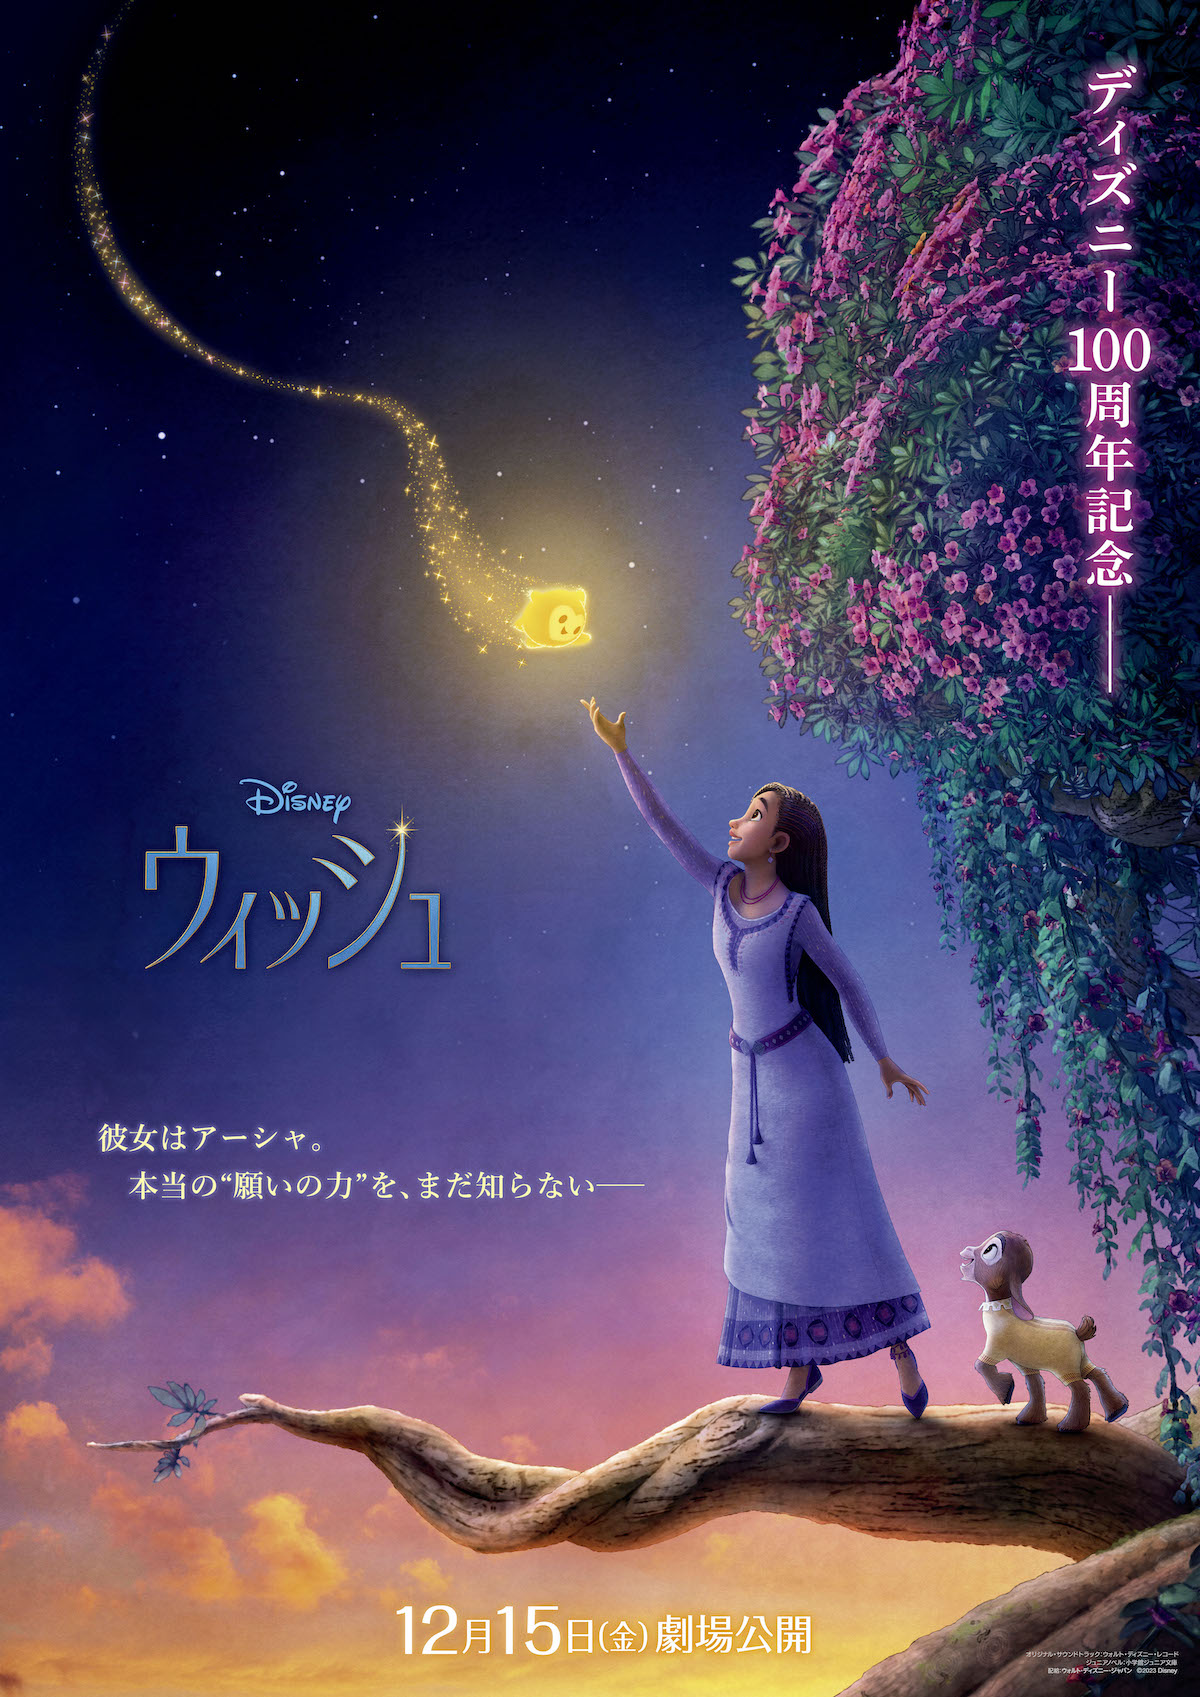 ディズニー映画『ウィッシュ』日本版ポスター